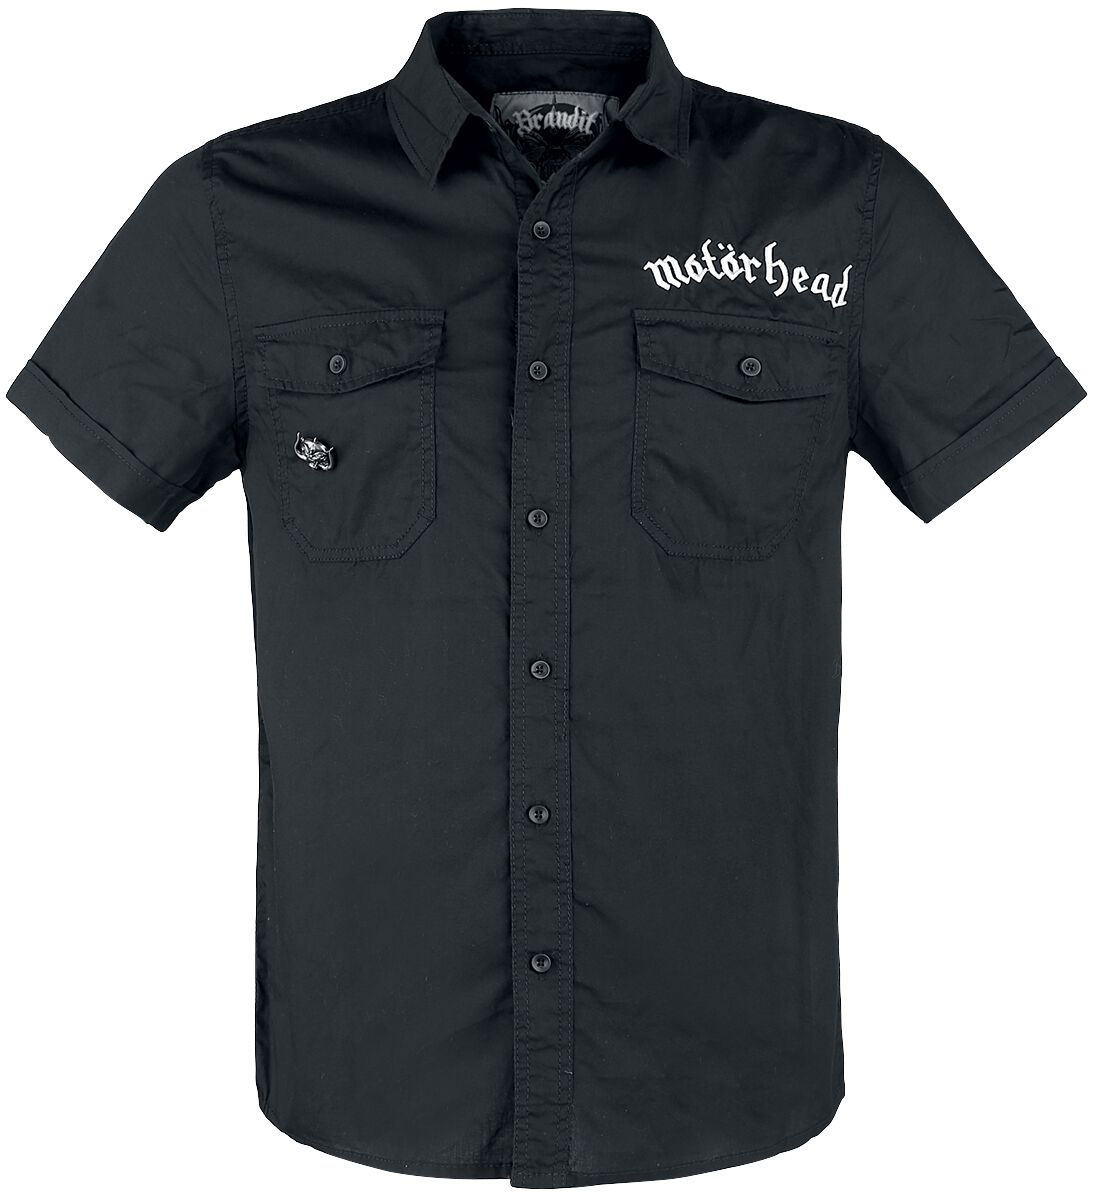 Motörhead Kurzarmhemd - Brandit Bastards - Roadstar Shirt - S bis 5XL - für Männer - Größe 4XL - schwarz  - Lizenziertes Merchandise!